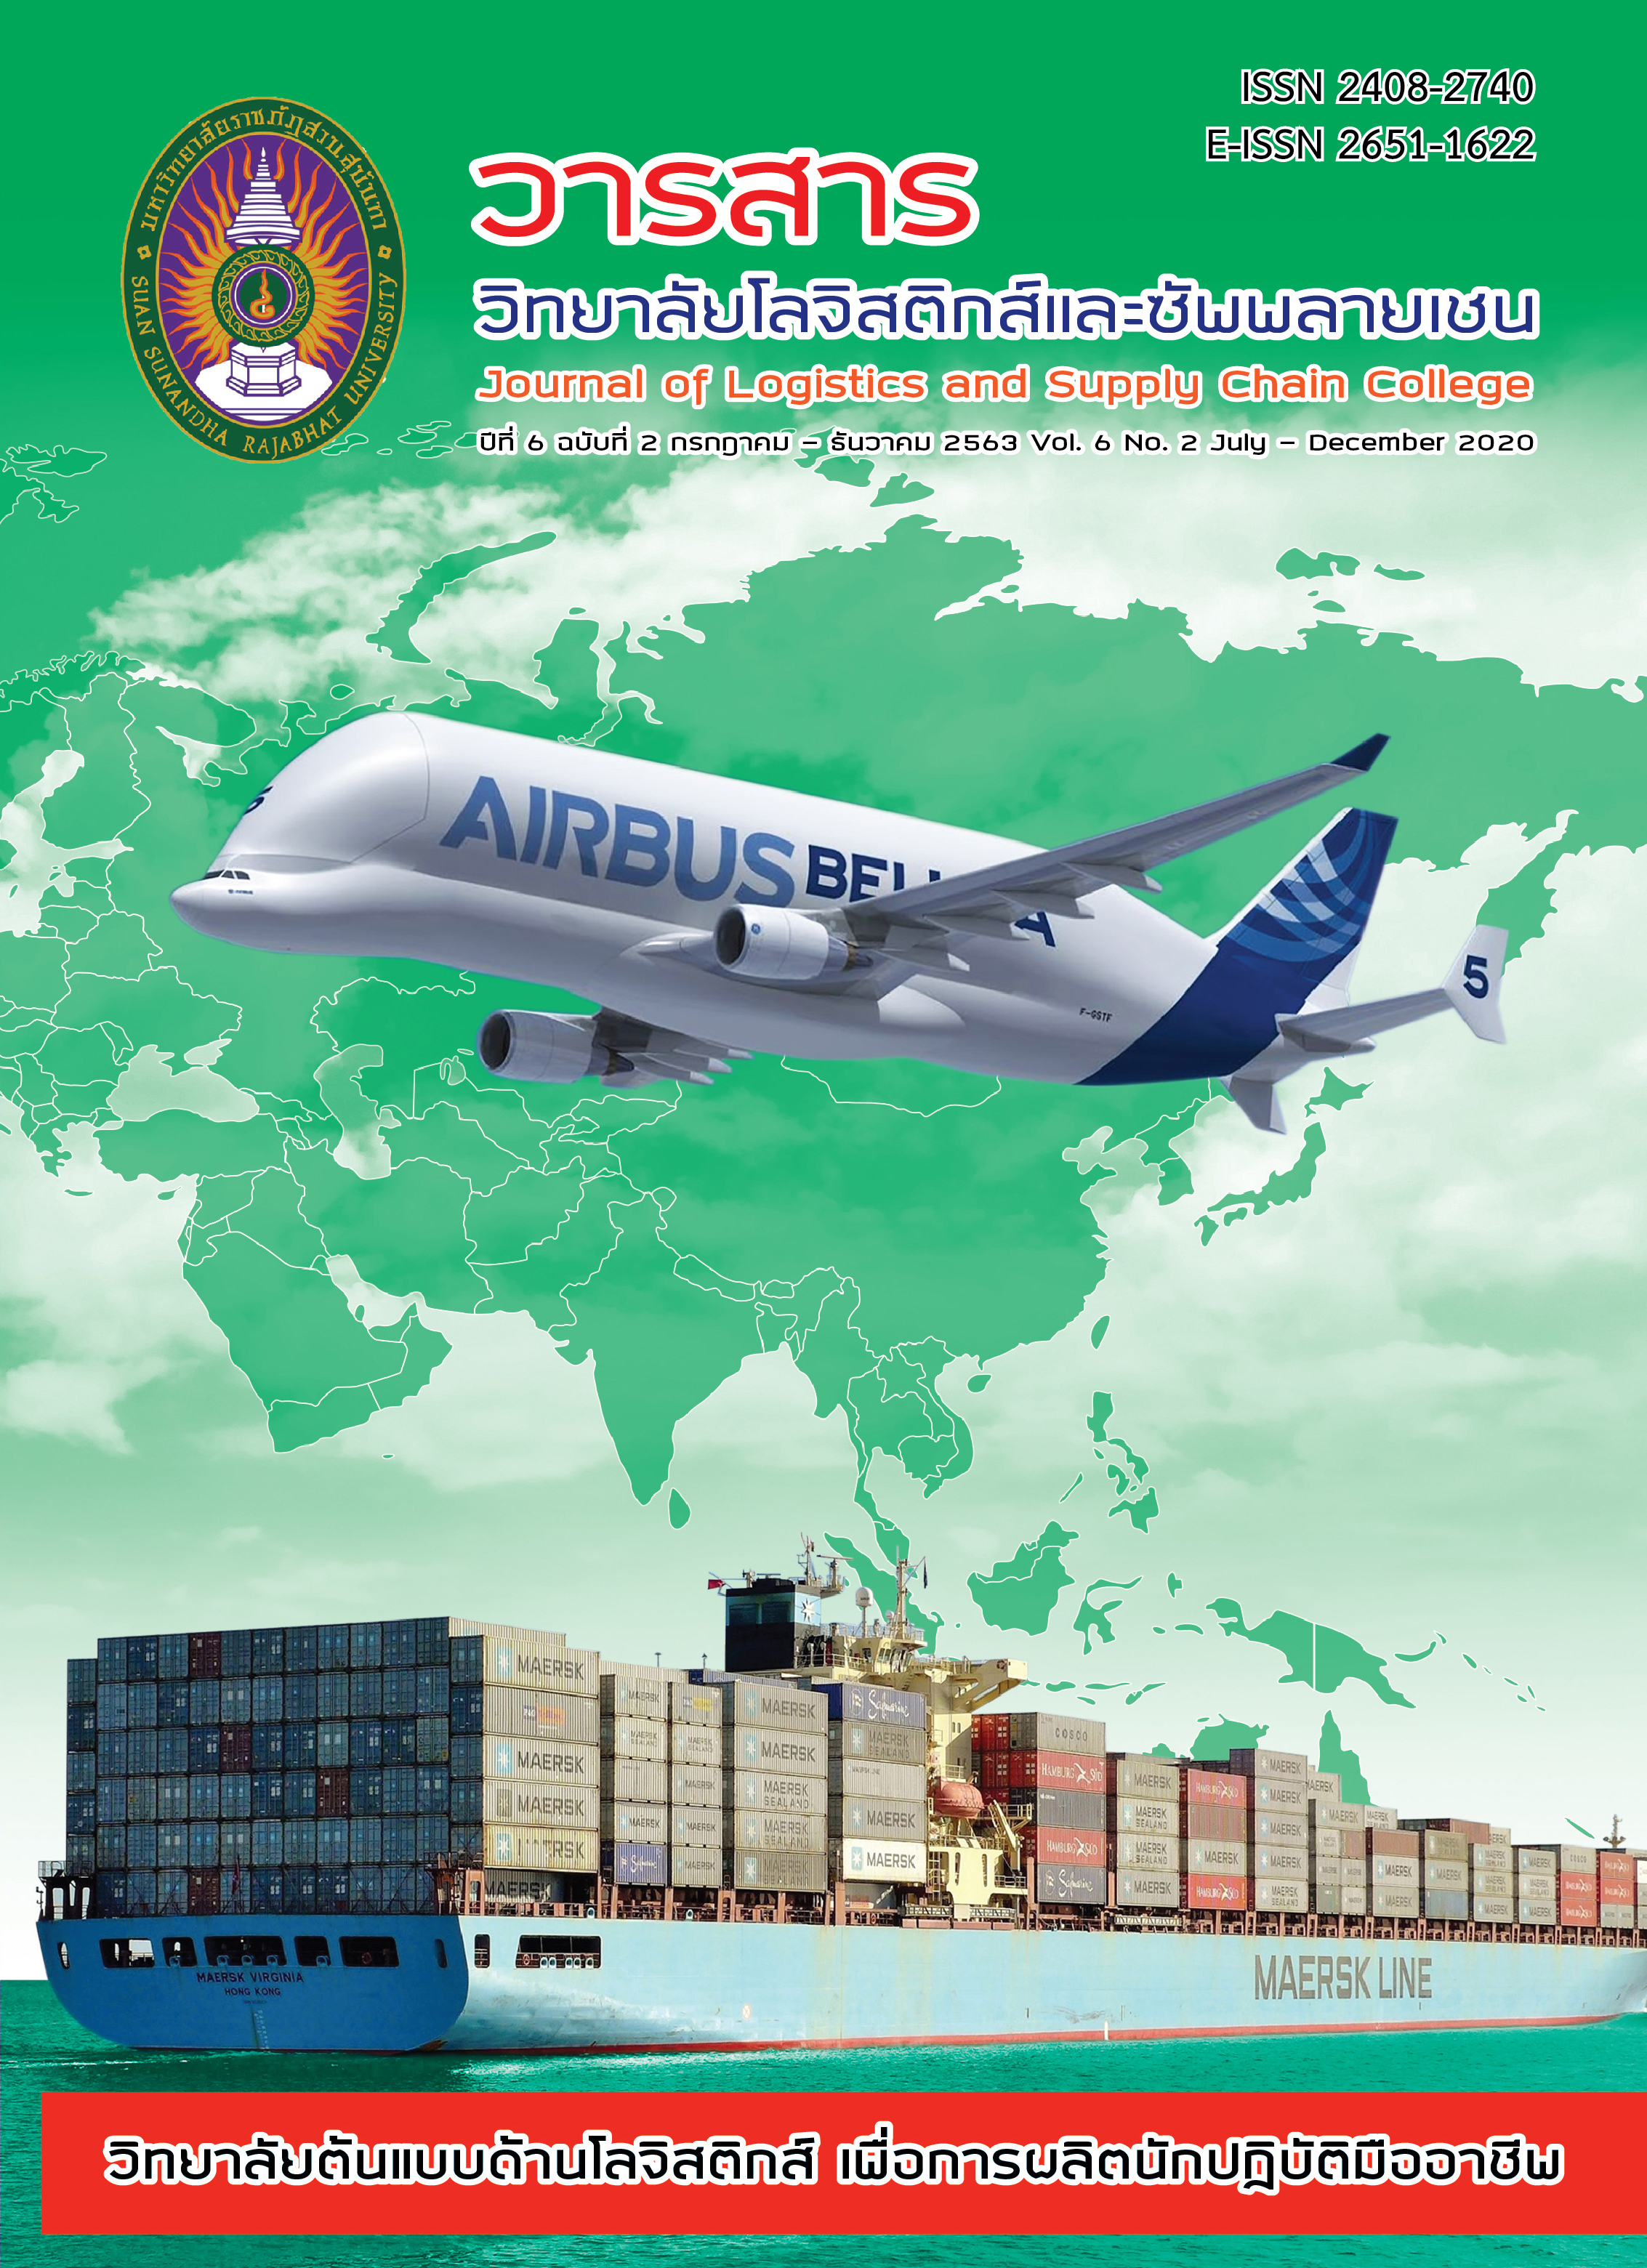 					ดู ปีที่ 6 ฉบับที่ 2 กรกฎาคม-ธันวาคม (2020): Journal of Logistics and Supply Chain College
				